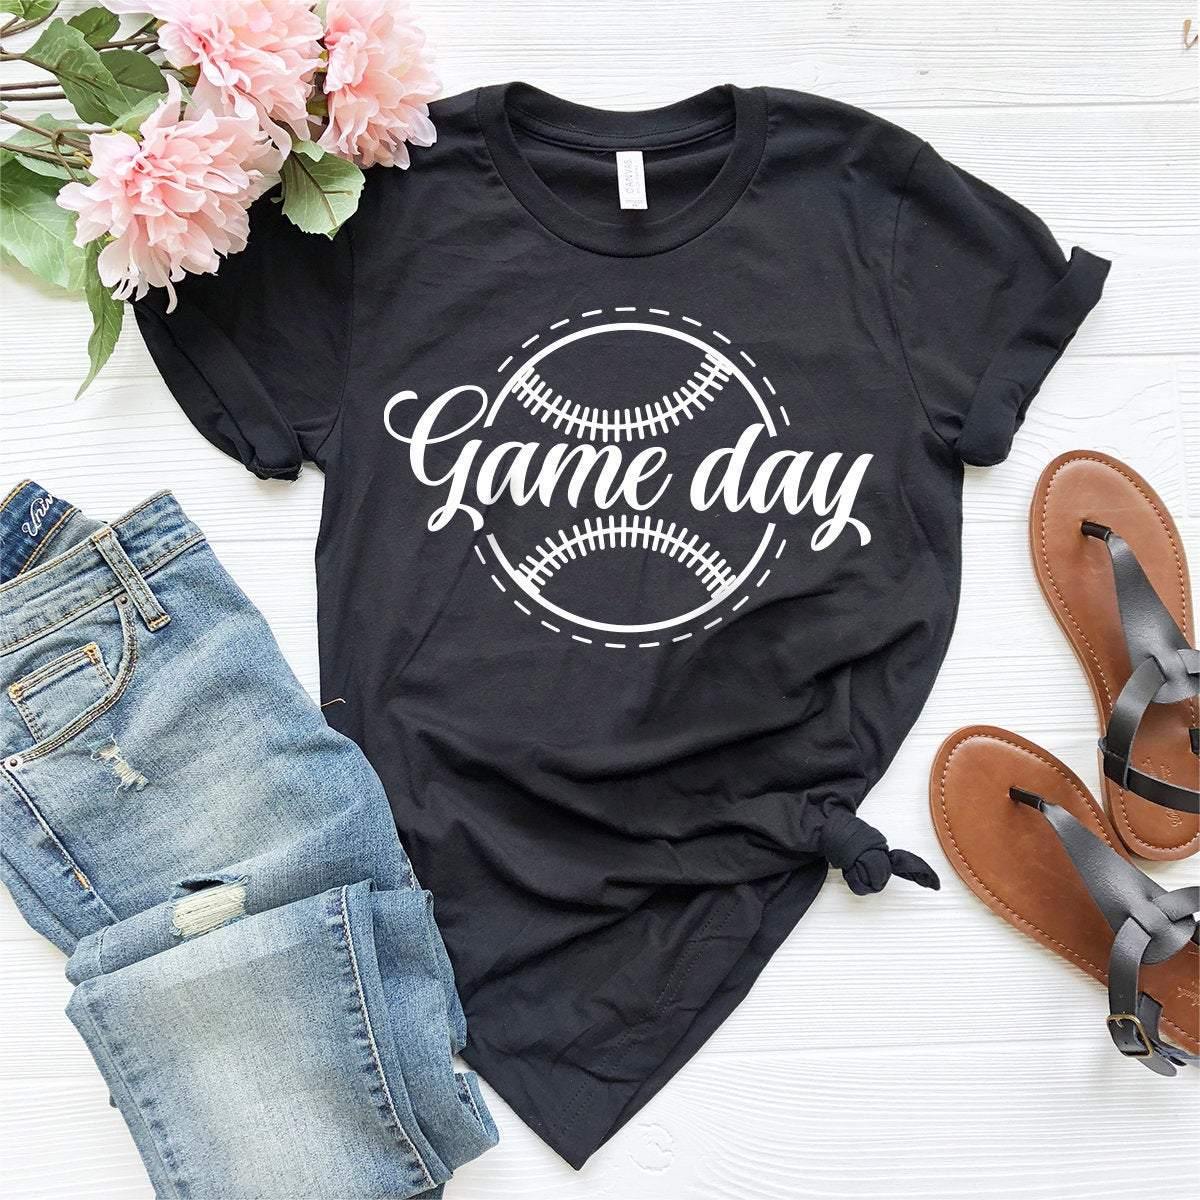 Baseball Game Day Tshirt, Baseball Mom Shirt, Baseball Dad T-Shirt, Baseball Player Gift, Baseball Life Tee, Game Day Vibes, Baseball Tee - Fastdeliverytees.com